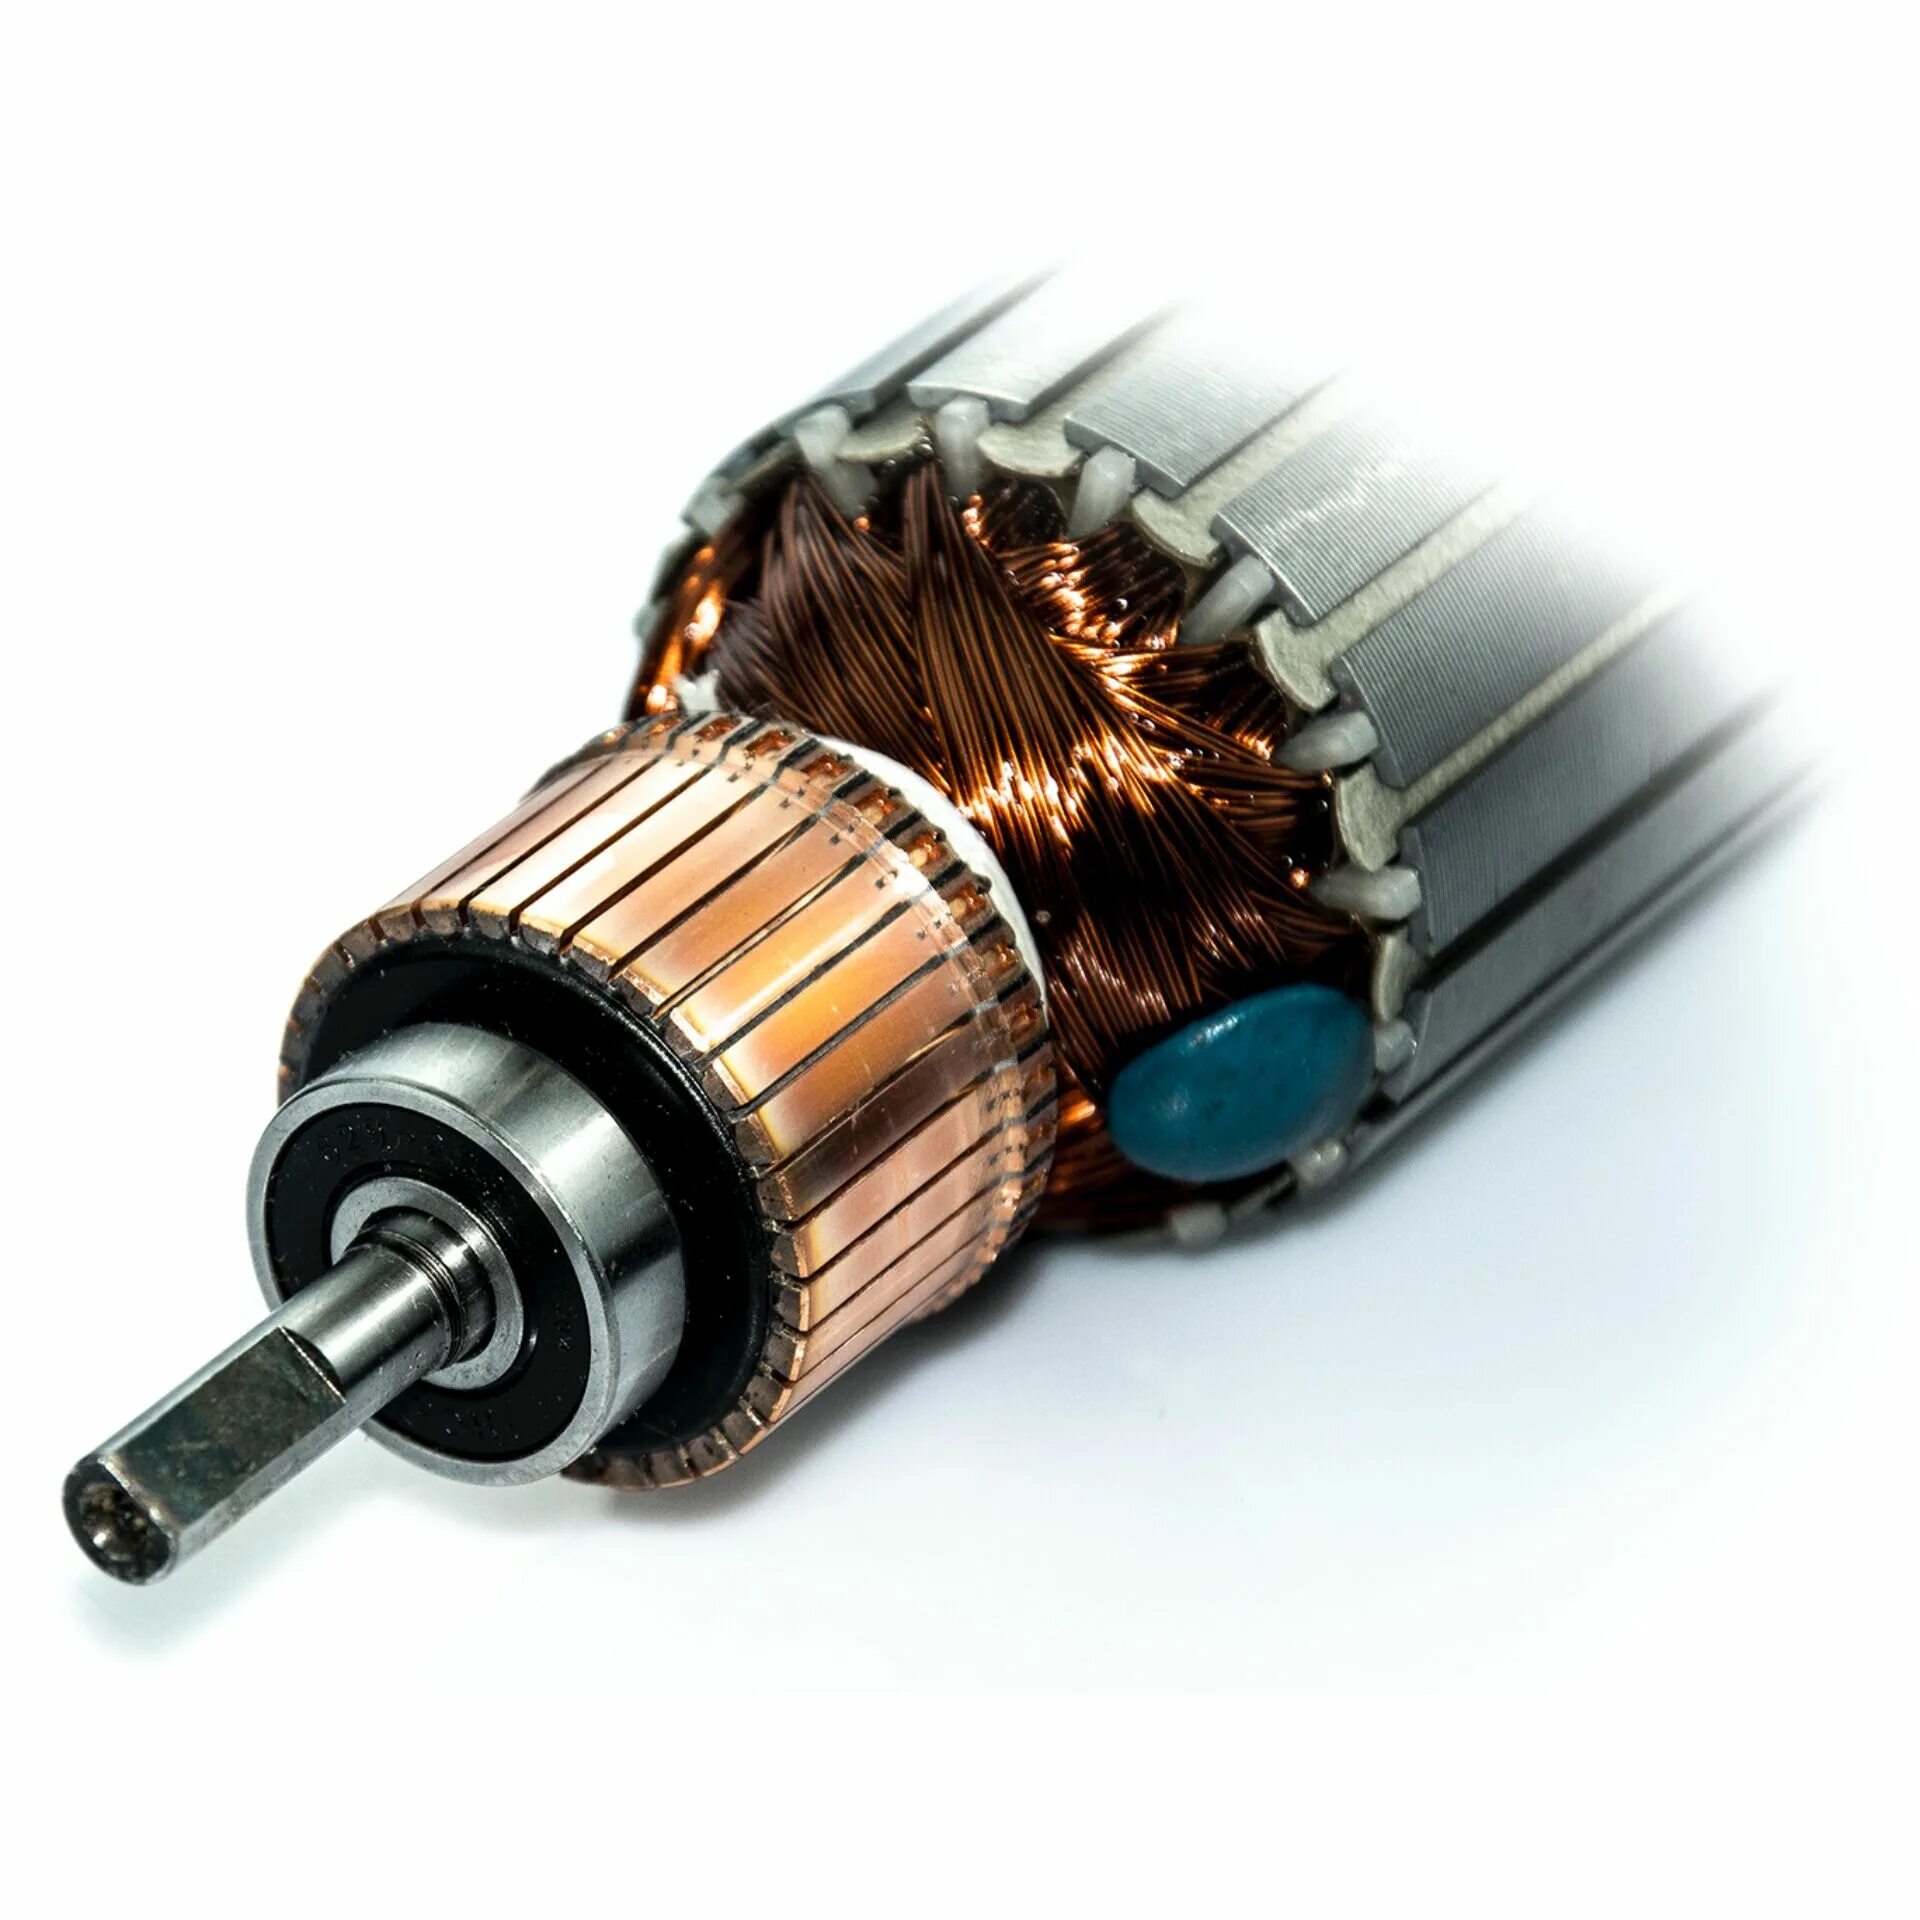 Коллектор мотора купить. Ротор коллекторного электродвигателя. Ротор Hitachi 360520e якорь электродвигателя. Ротор щеточного электродвигателя 24v3kw. Обмотка ротора электродвигателя.